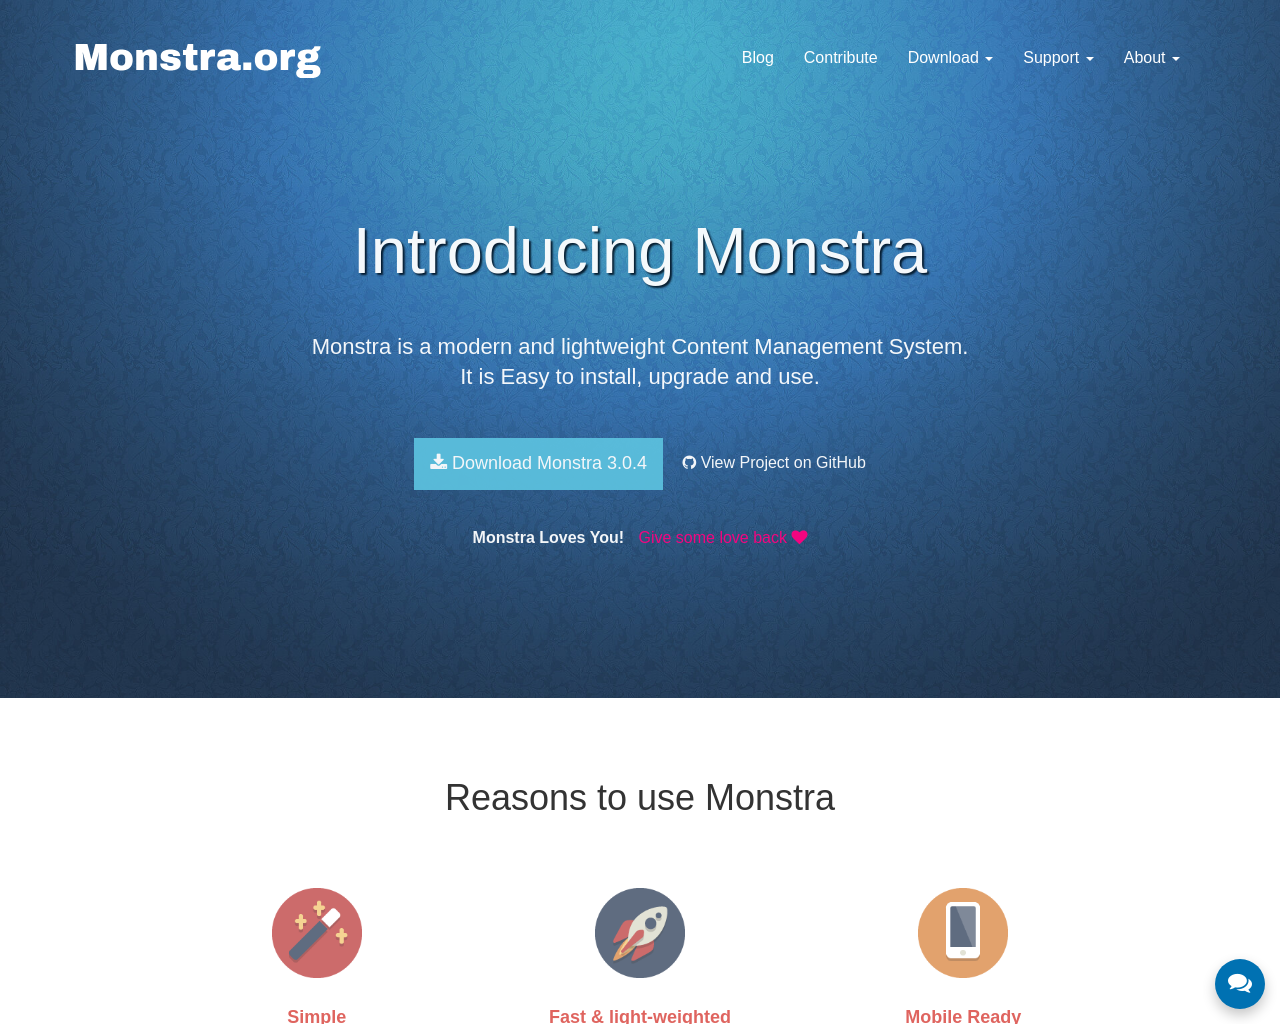 monstra.org